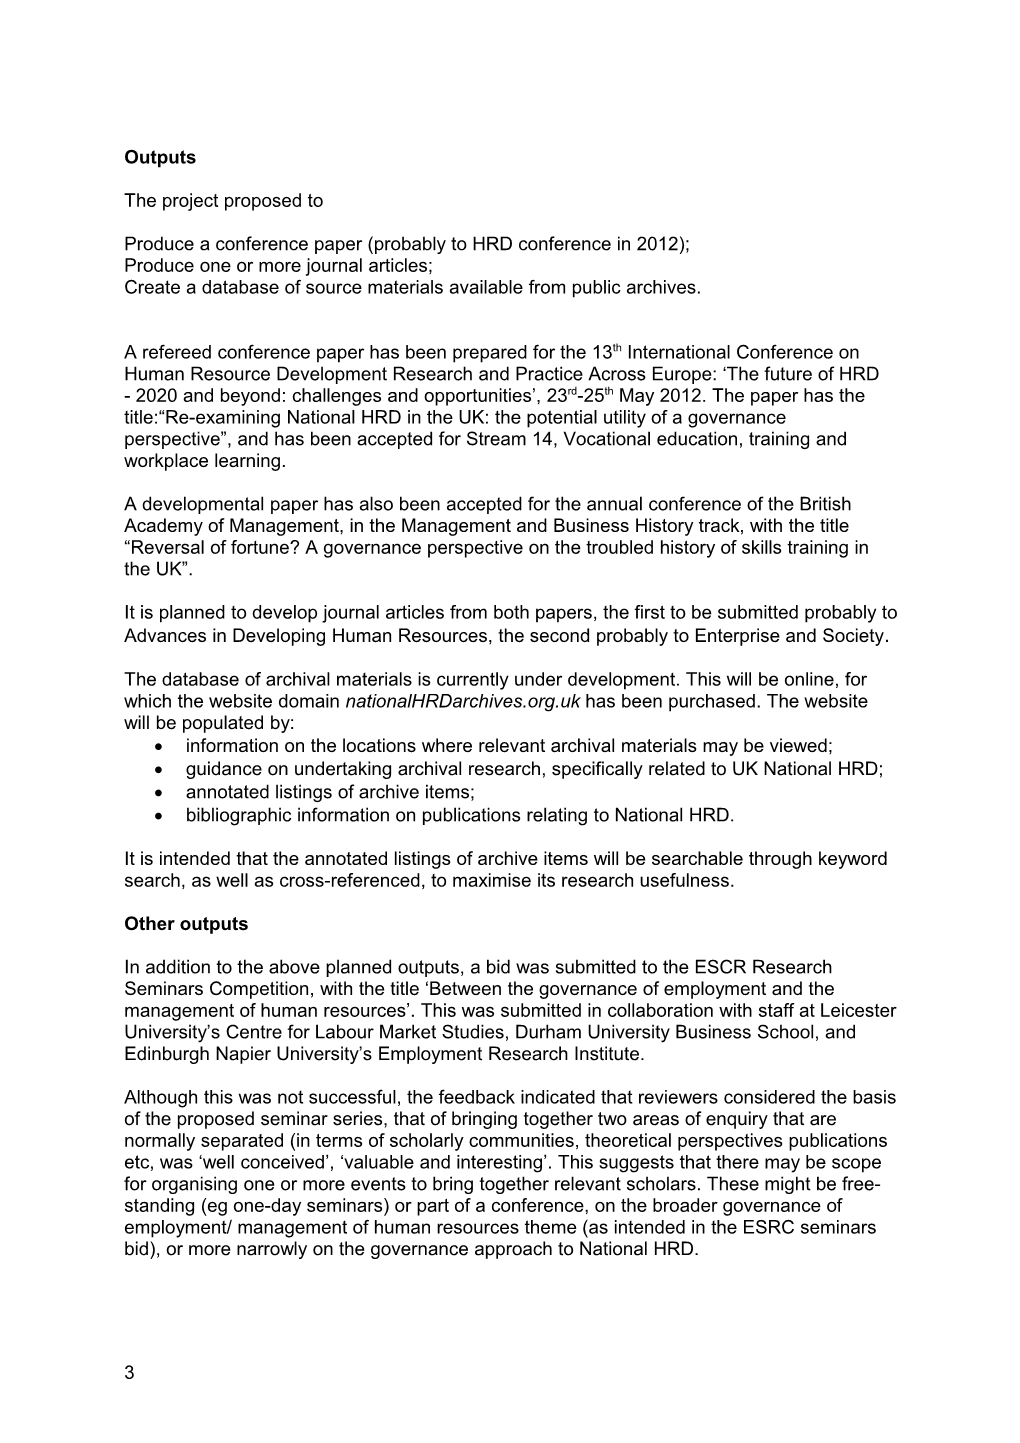 UFHRD Research Honorarium 2011-2012